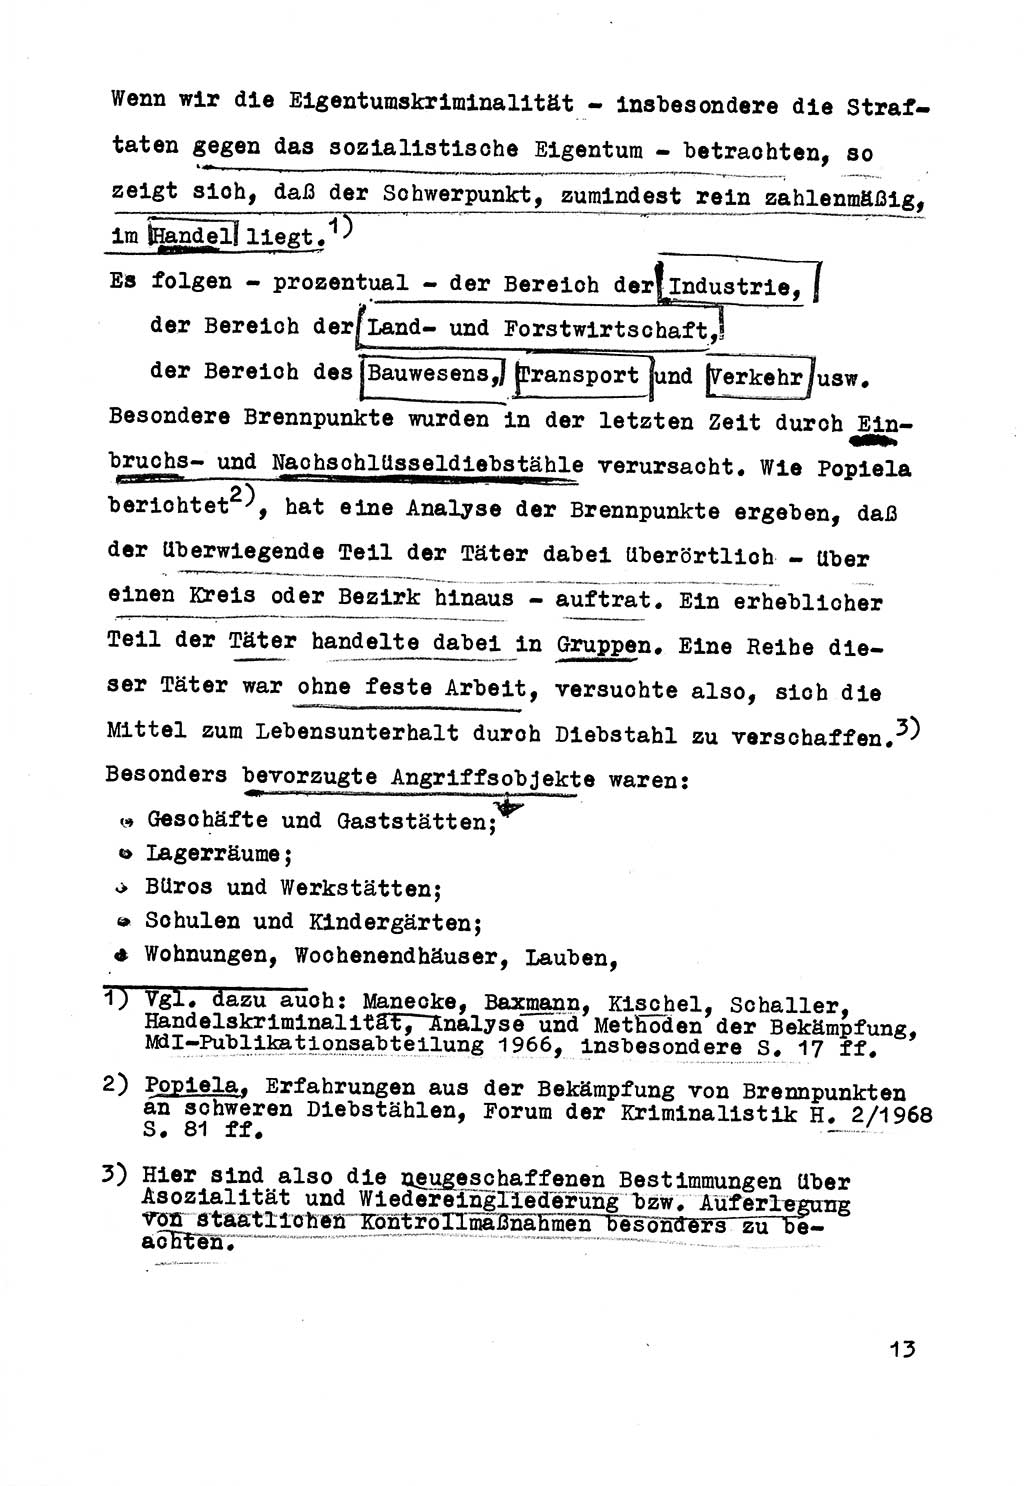 Strafrecht der DDR (Deutsche Demokratische Republik), Besonderer Teil, Lehrmaterial, Heft 5 1970, Seite 13 (Strafr. DDR BT Lehrmat. H. 5 1970, S. 13)